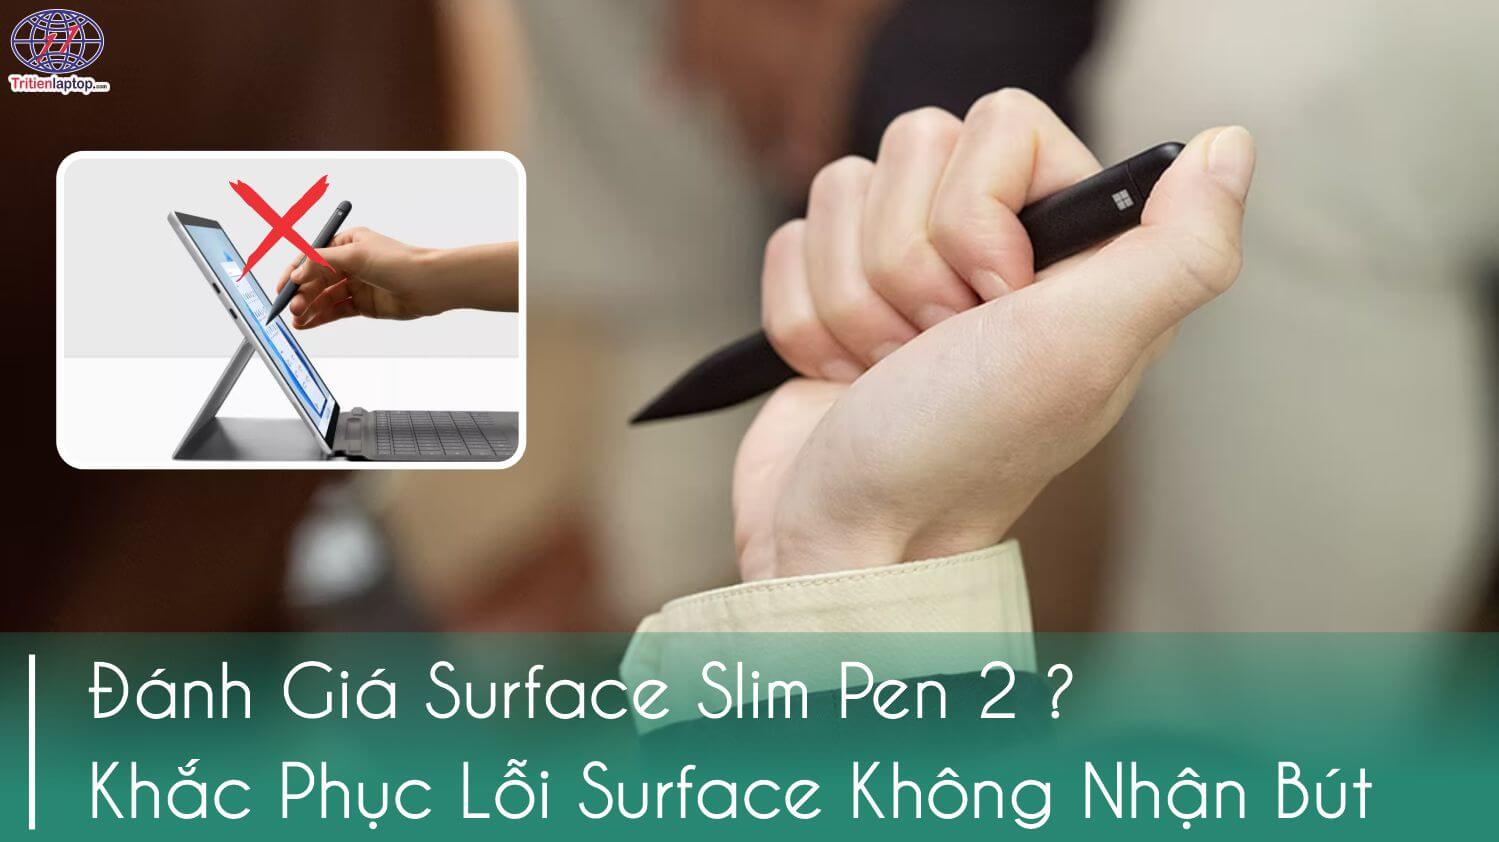 Đánh giá Surface Slim Pen 2. Khắc phục lỗi bút Surface Slim Pen 2 không hoạt động